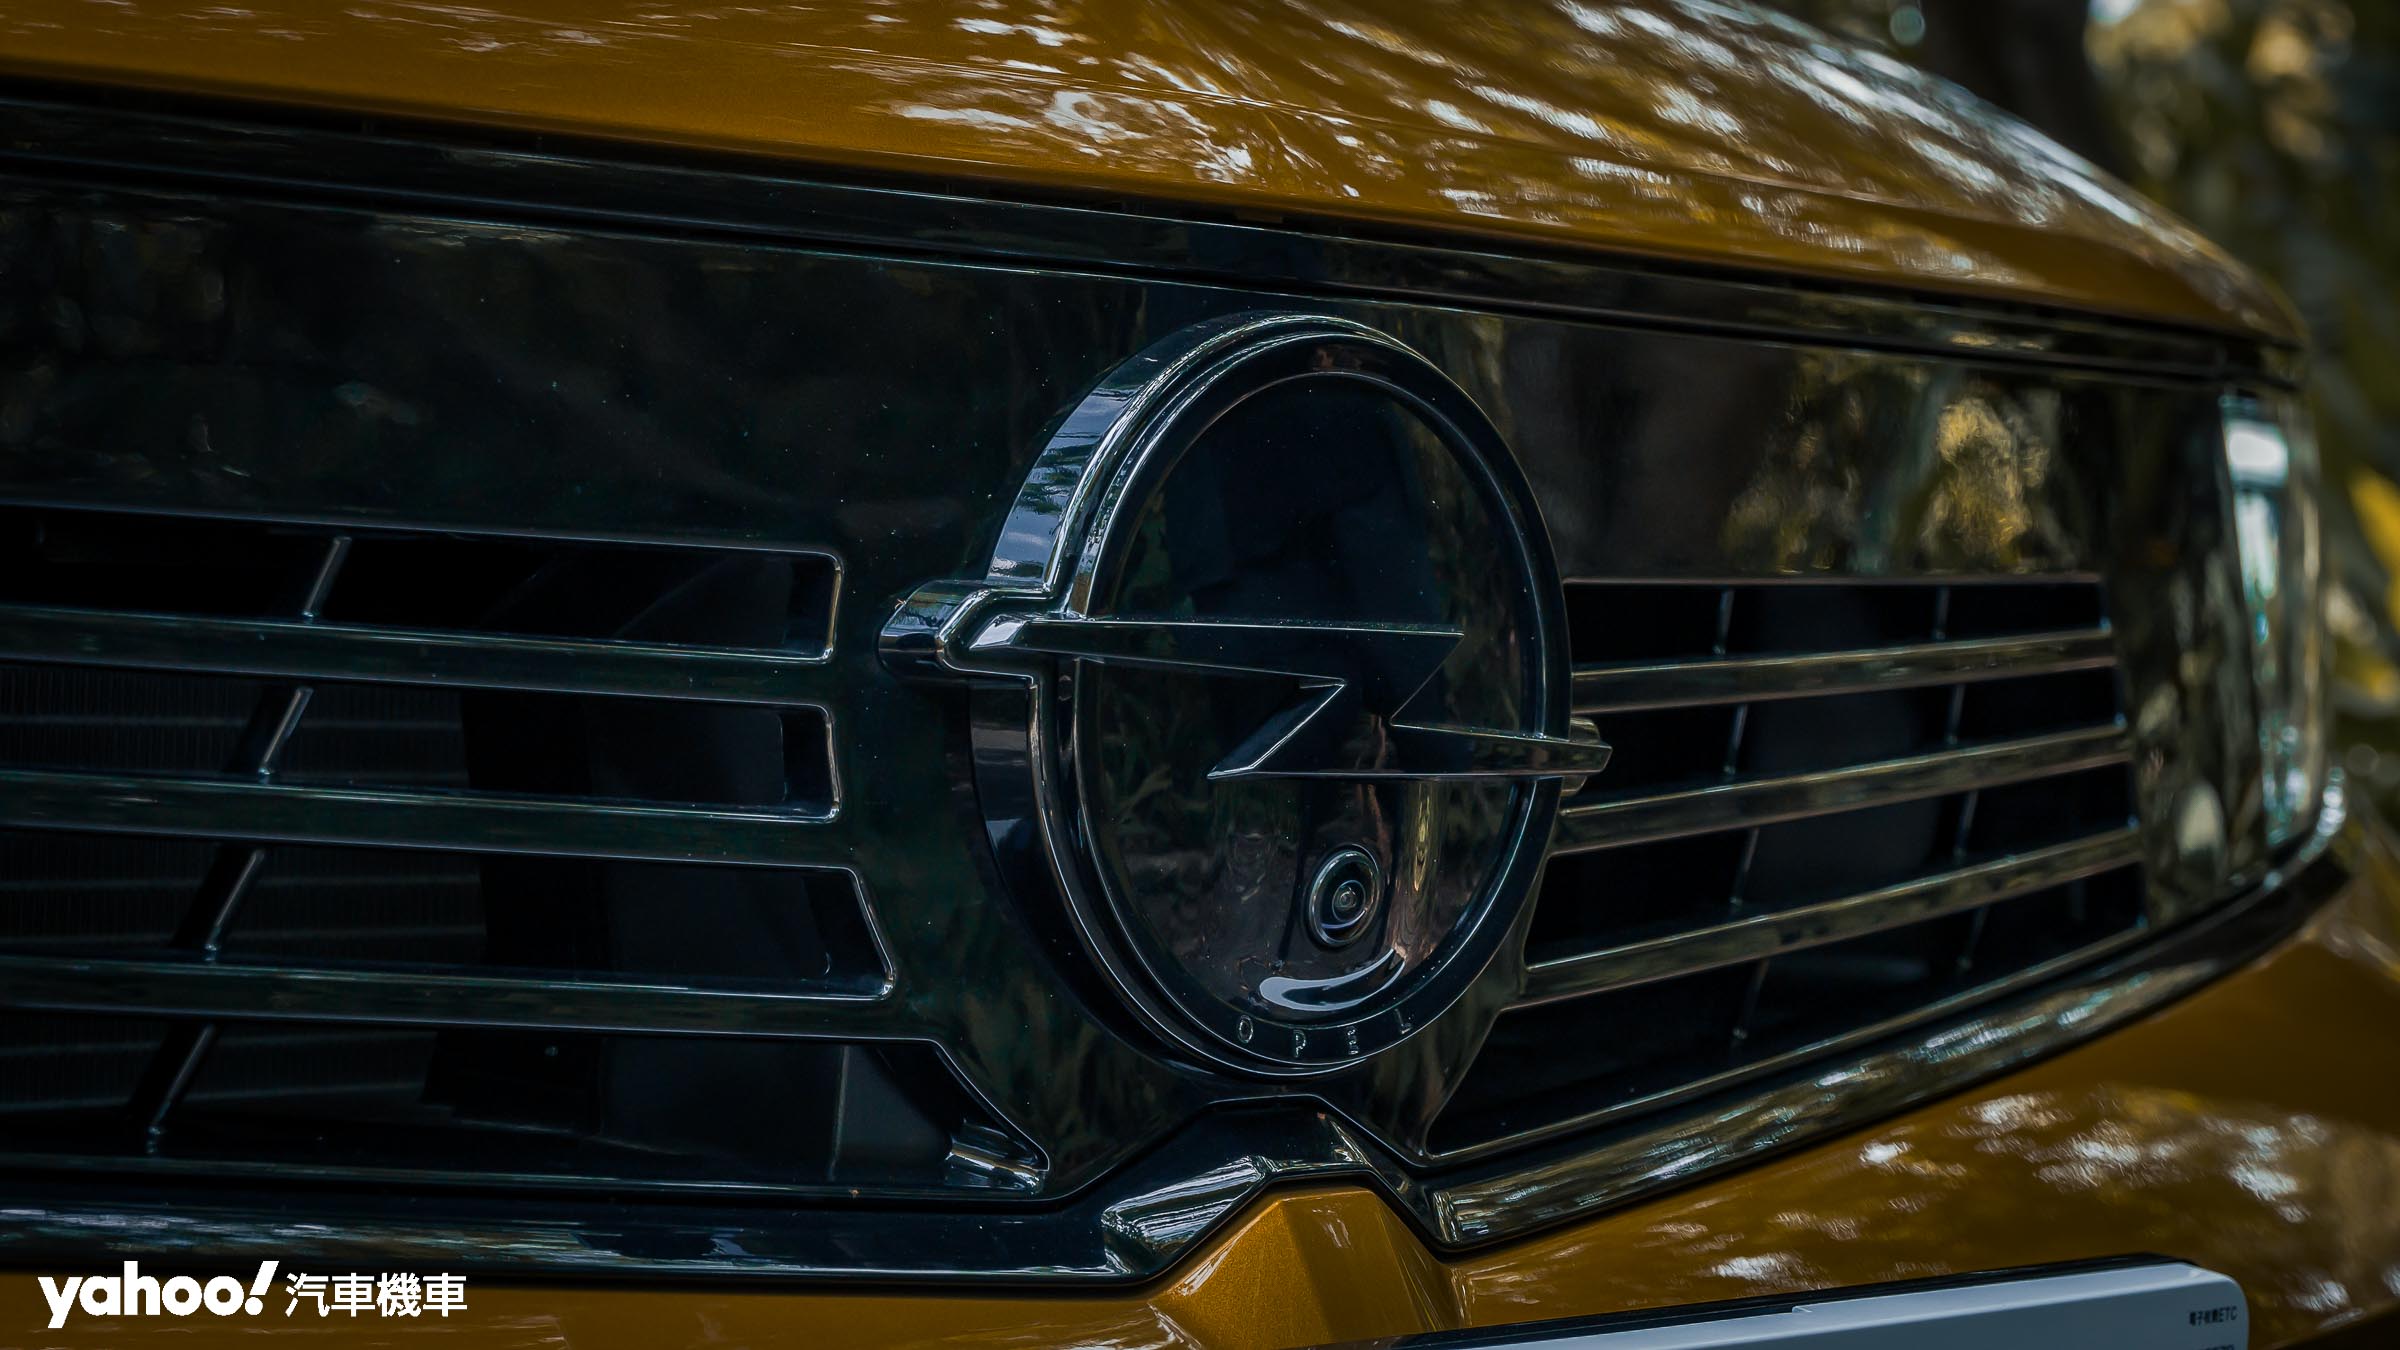 位於車頭水箱護罩的Vizor 閃電風鏡，是全車最受矚目的視覺焦點之一。